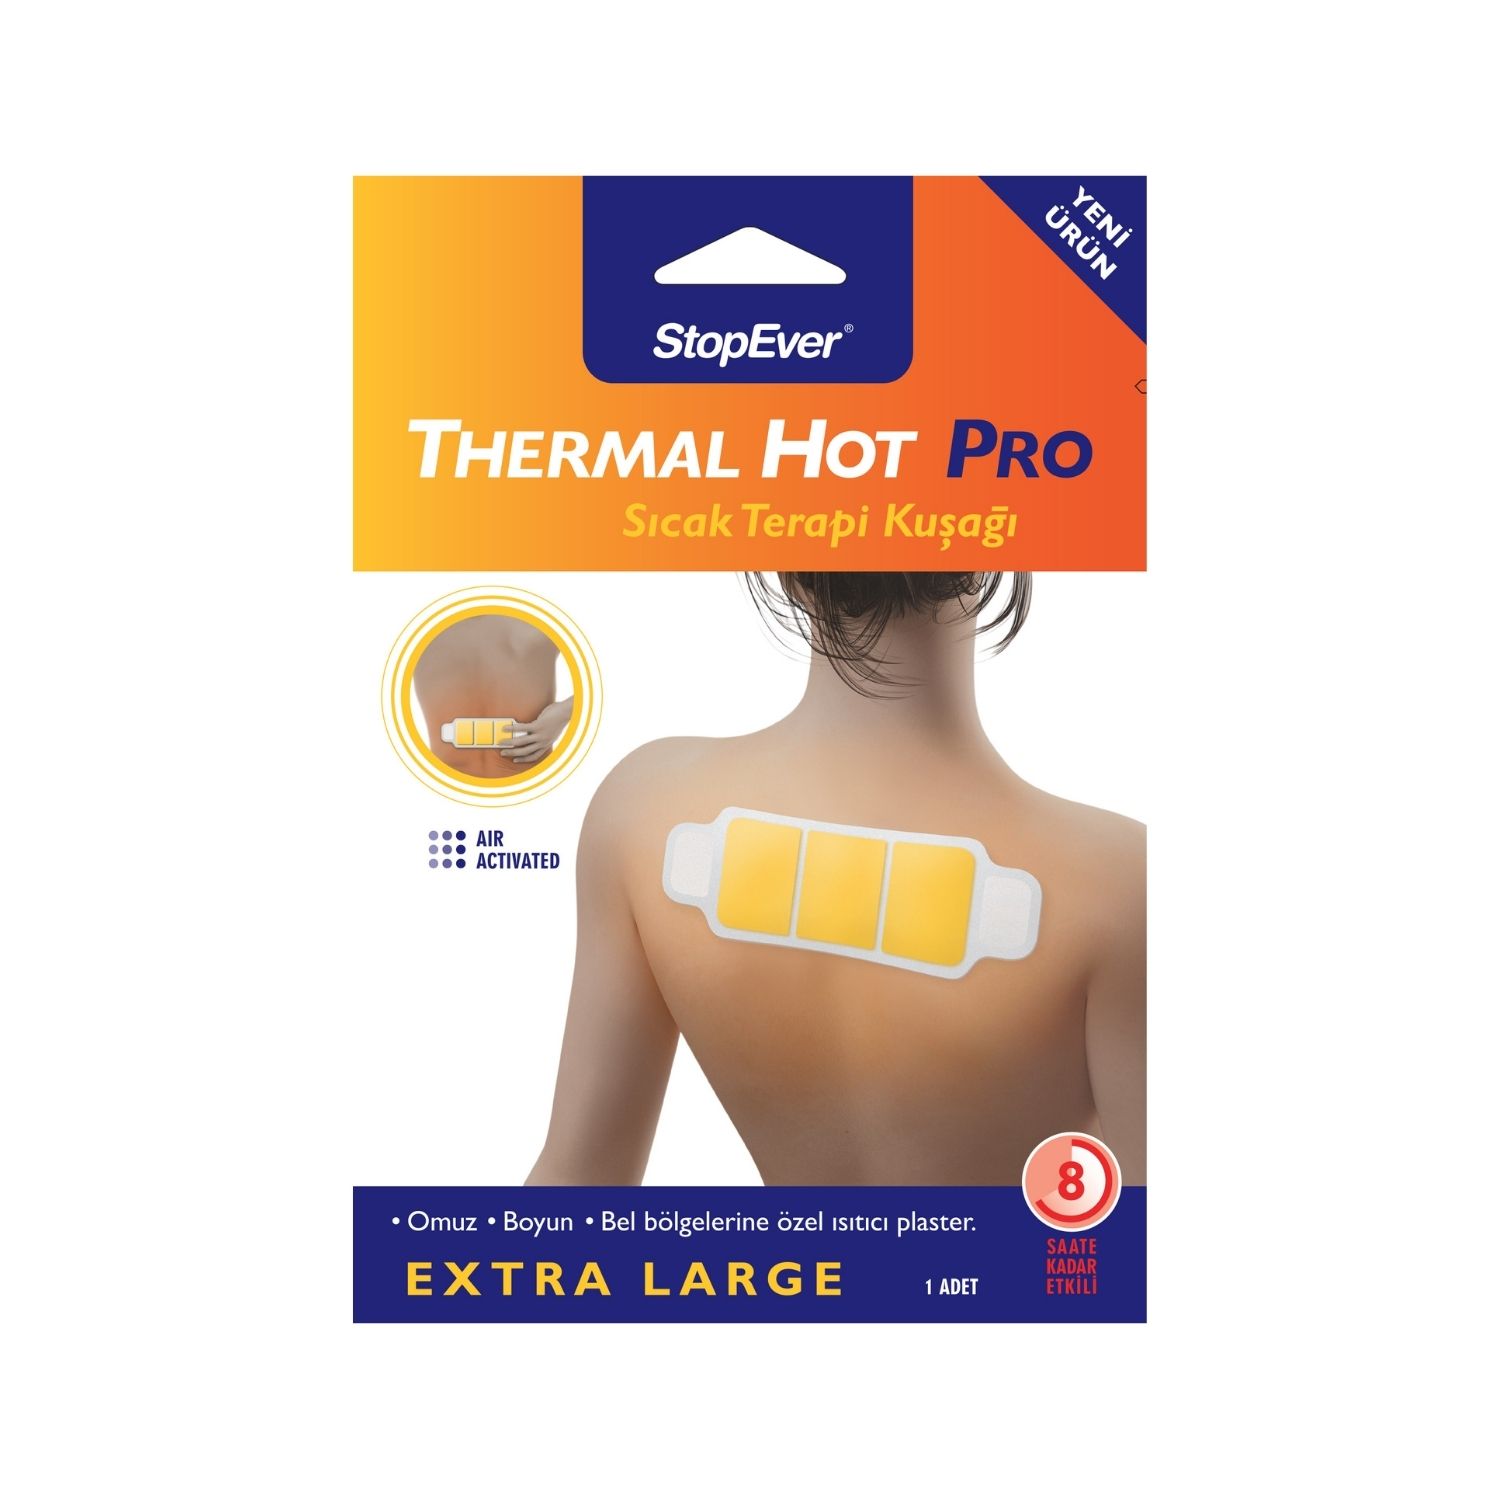 01 StopEver Thermal Hot Pro Sicak Terapi Kusagi Front Stop Ever